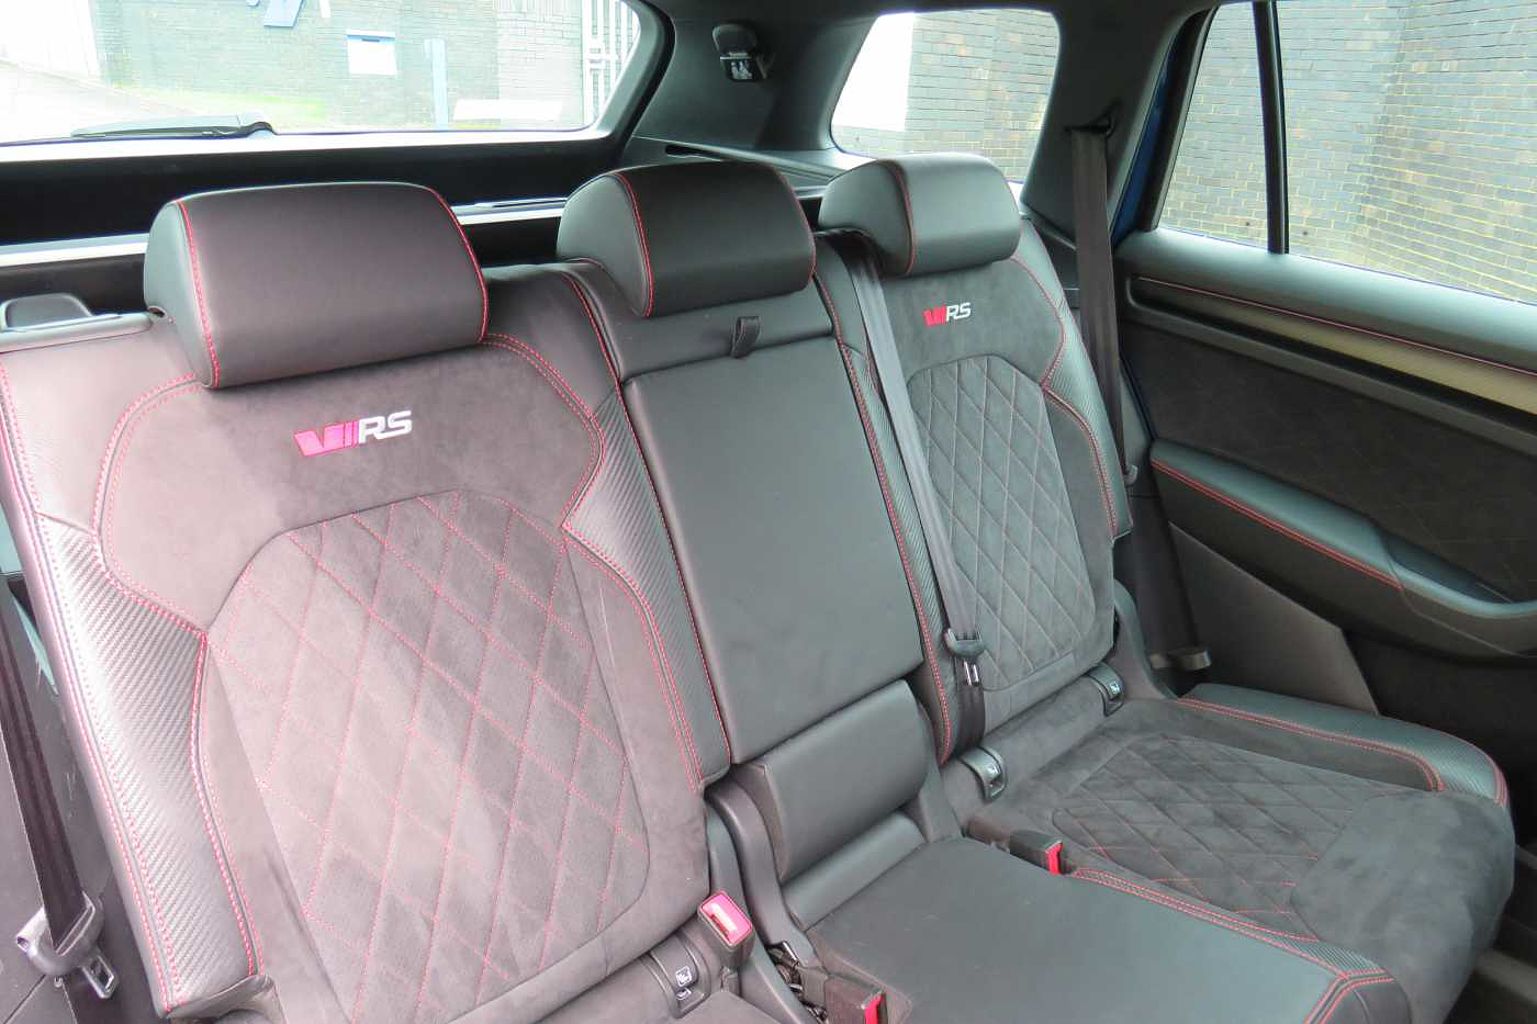 SKODA Kodiaq 2.0 BiTDI (239ps) 4X4 vRS (7 seats) DSG SUV